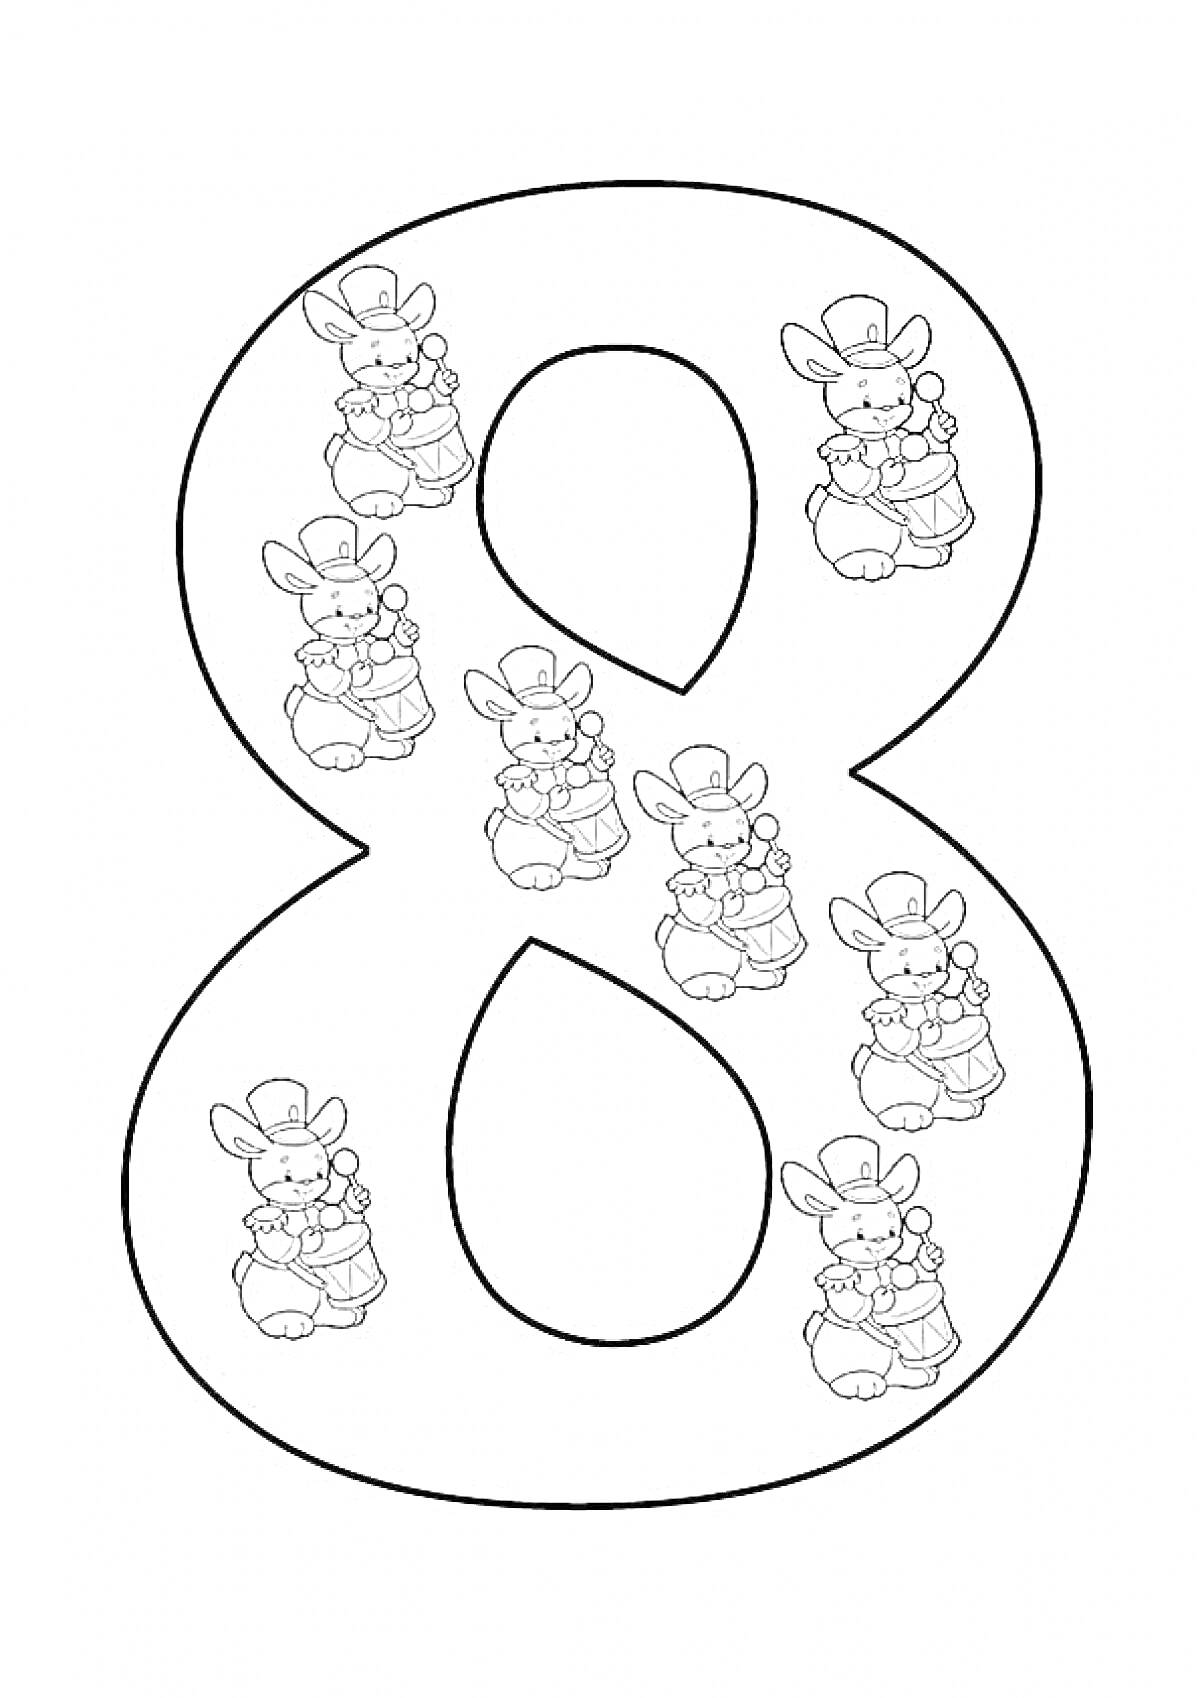 Раскраска Цифра 8 с кроликами мальчиком и девочкой